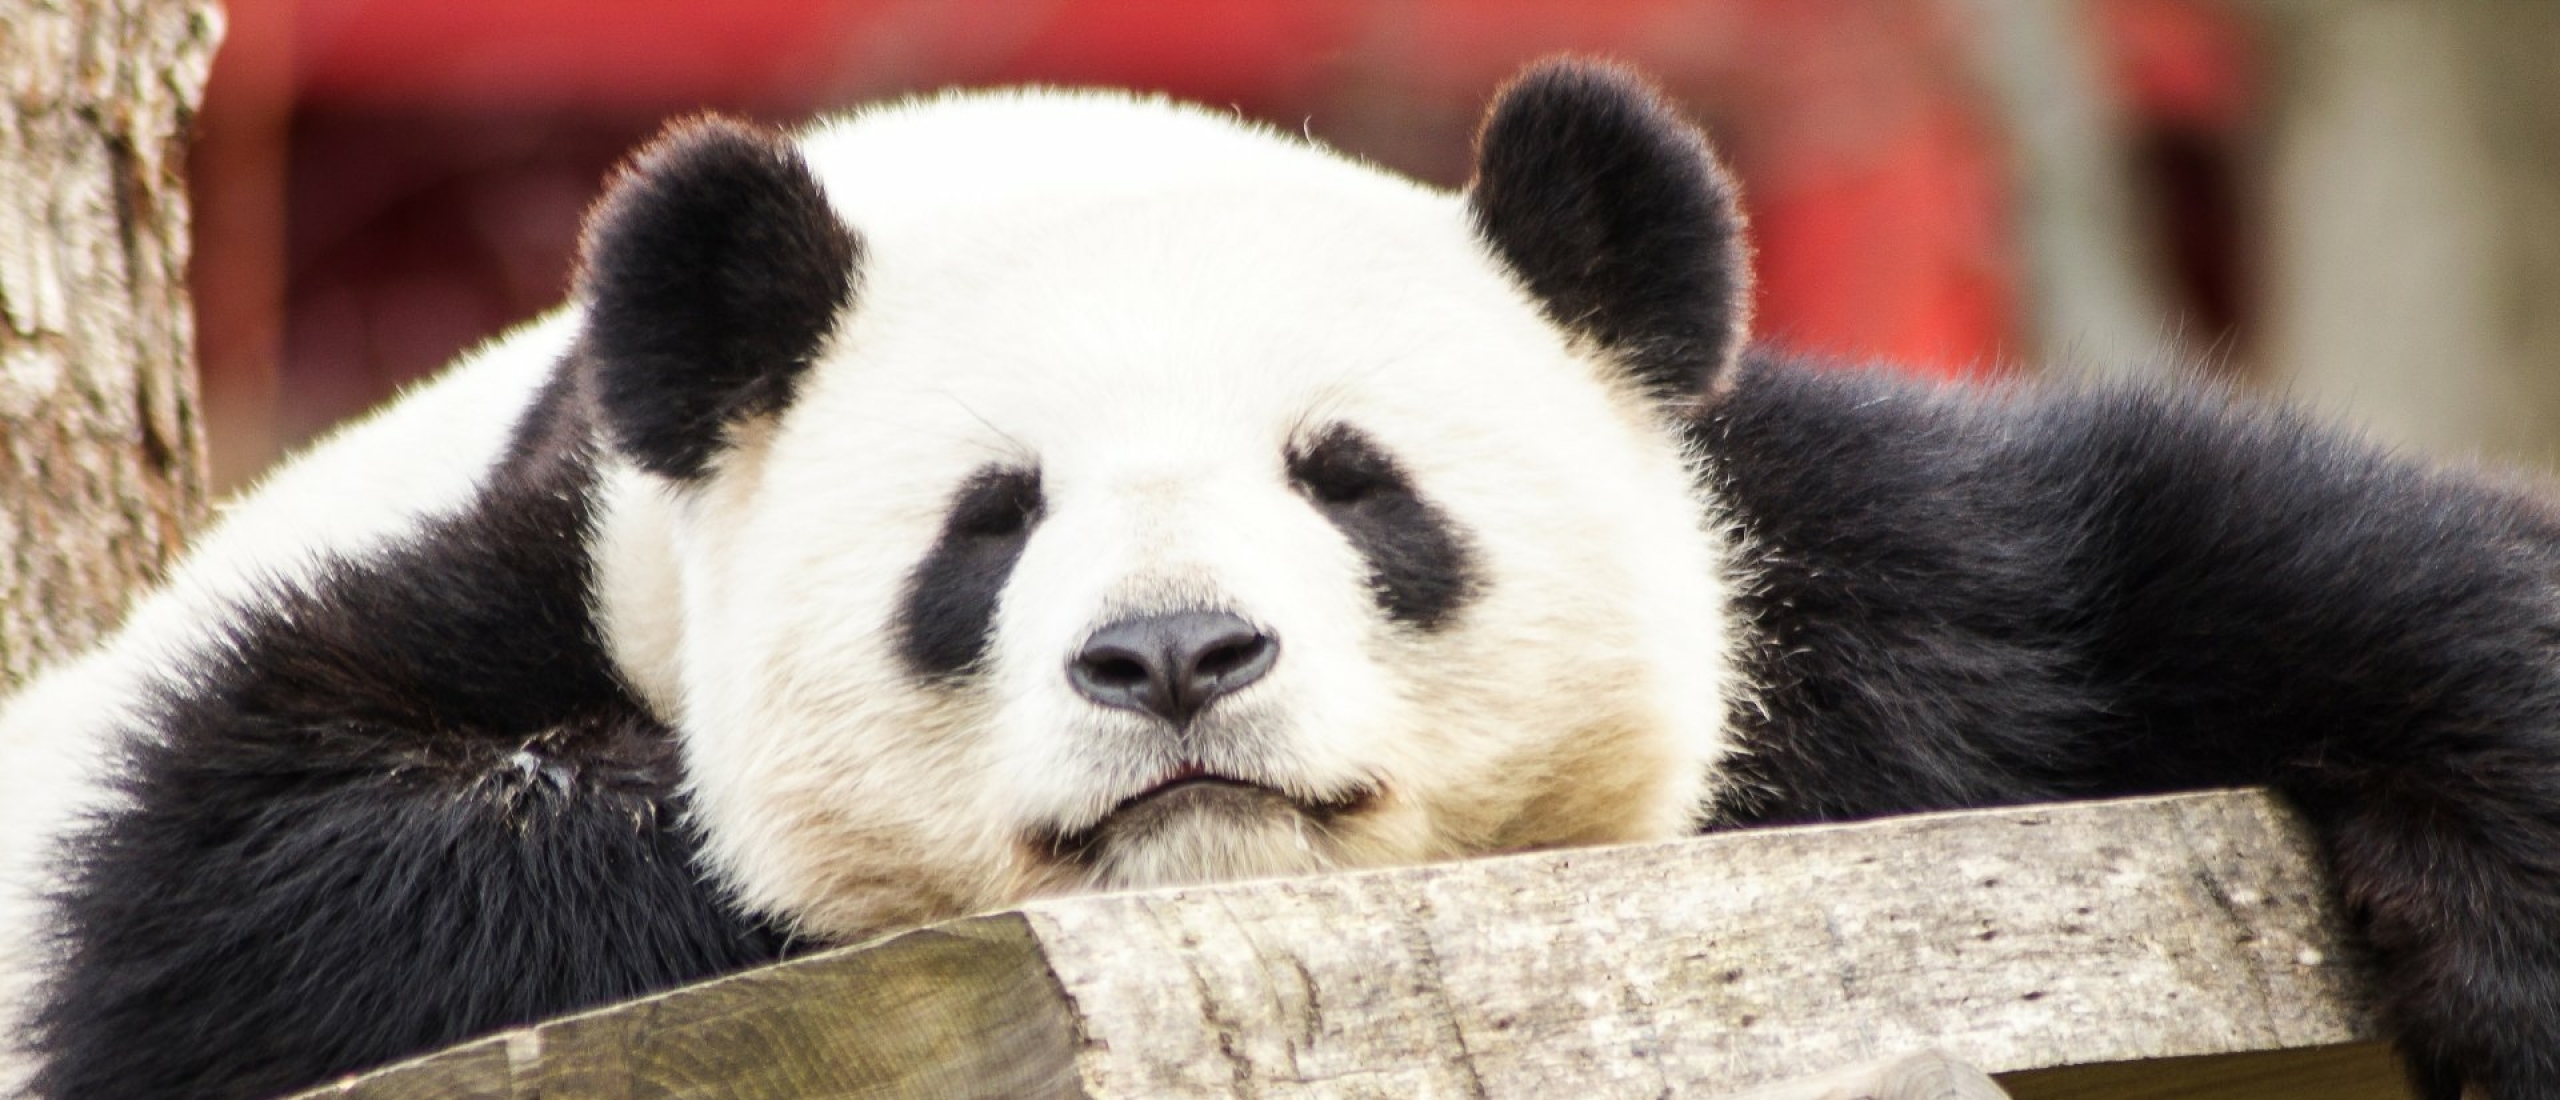 Panda's kijken in Chengdu Panda Breeding Centre